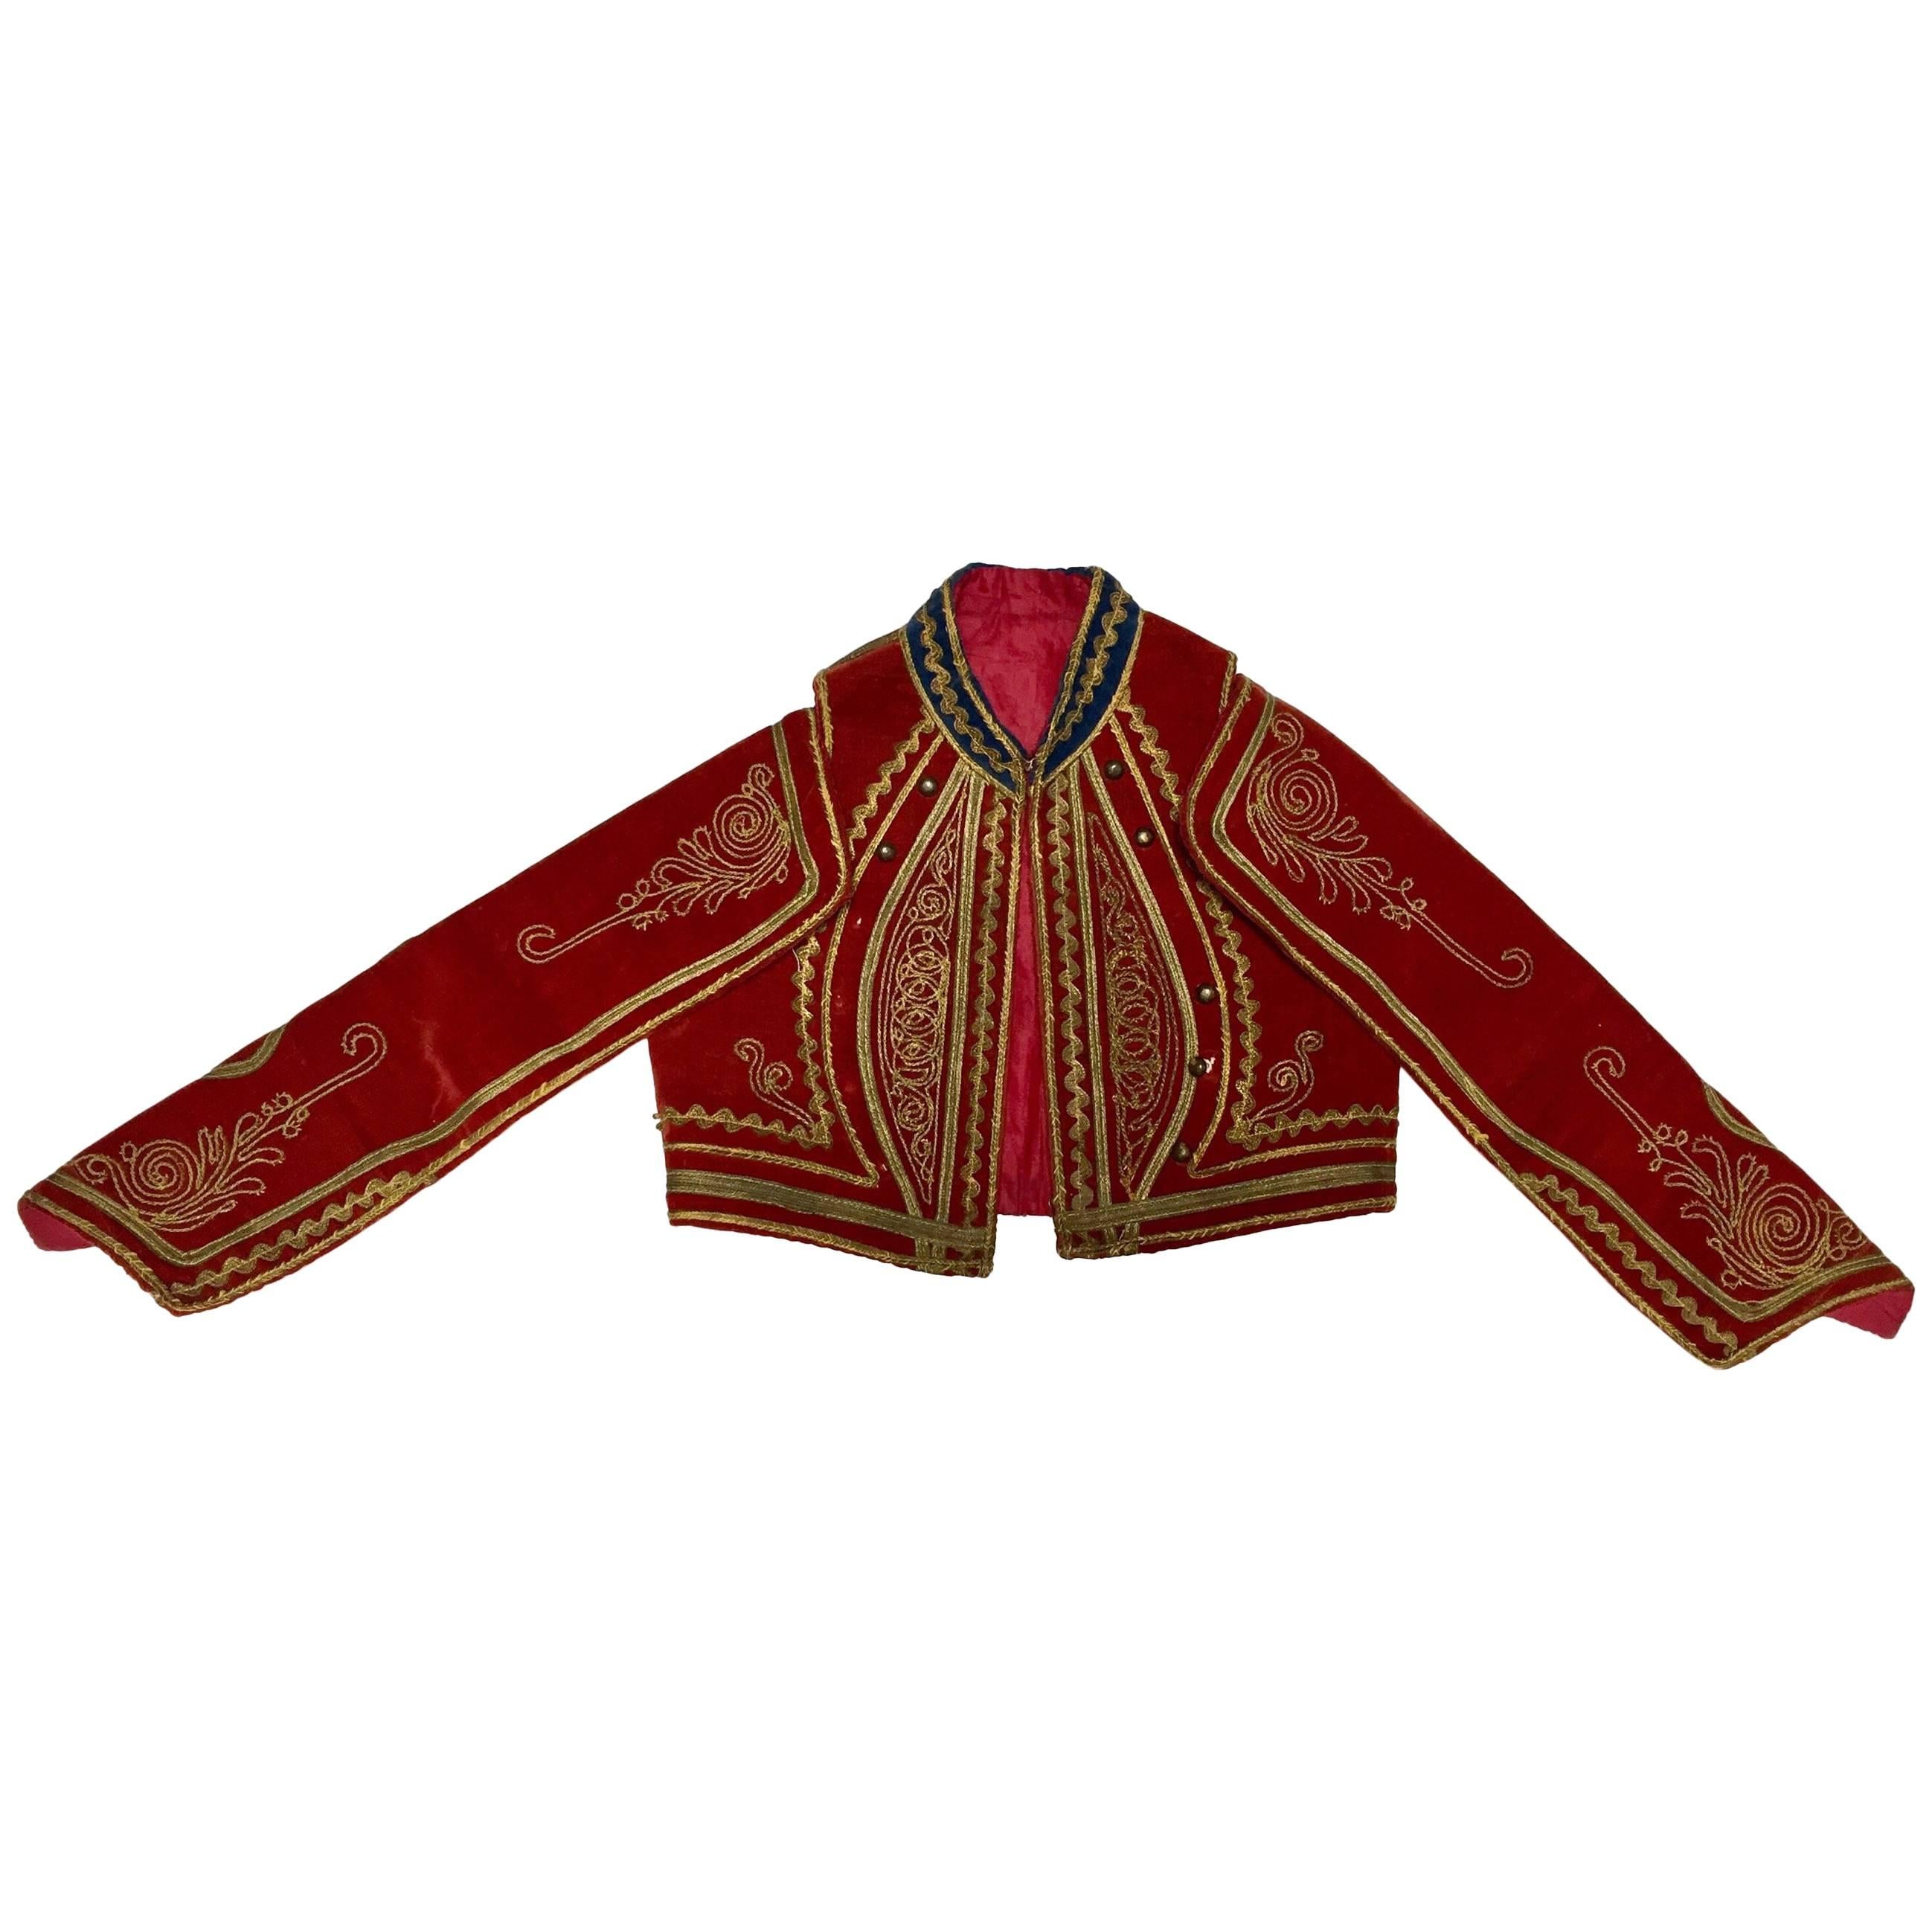 Antique Red Velvet Efe Zeybek Jacket Turkish Vest with Gold Embroidery For Sale